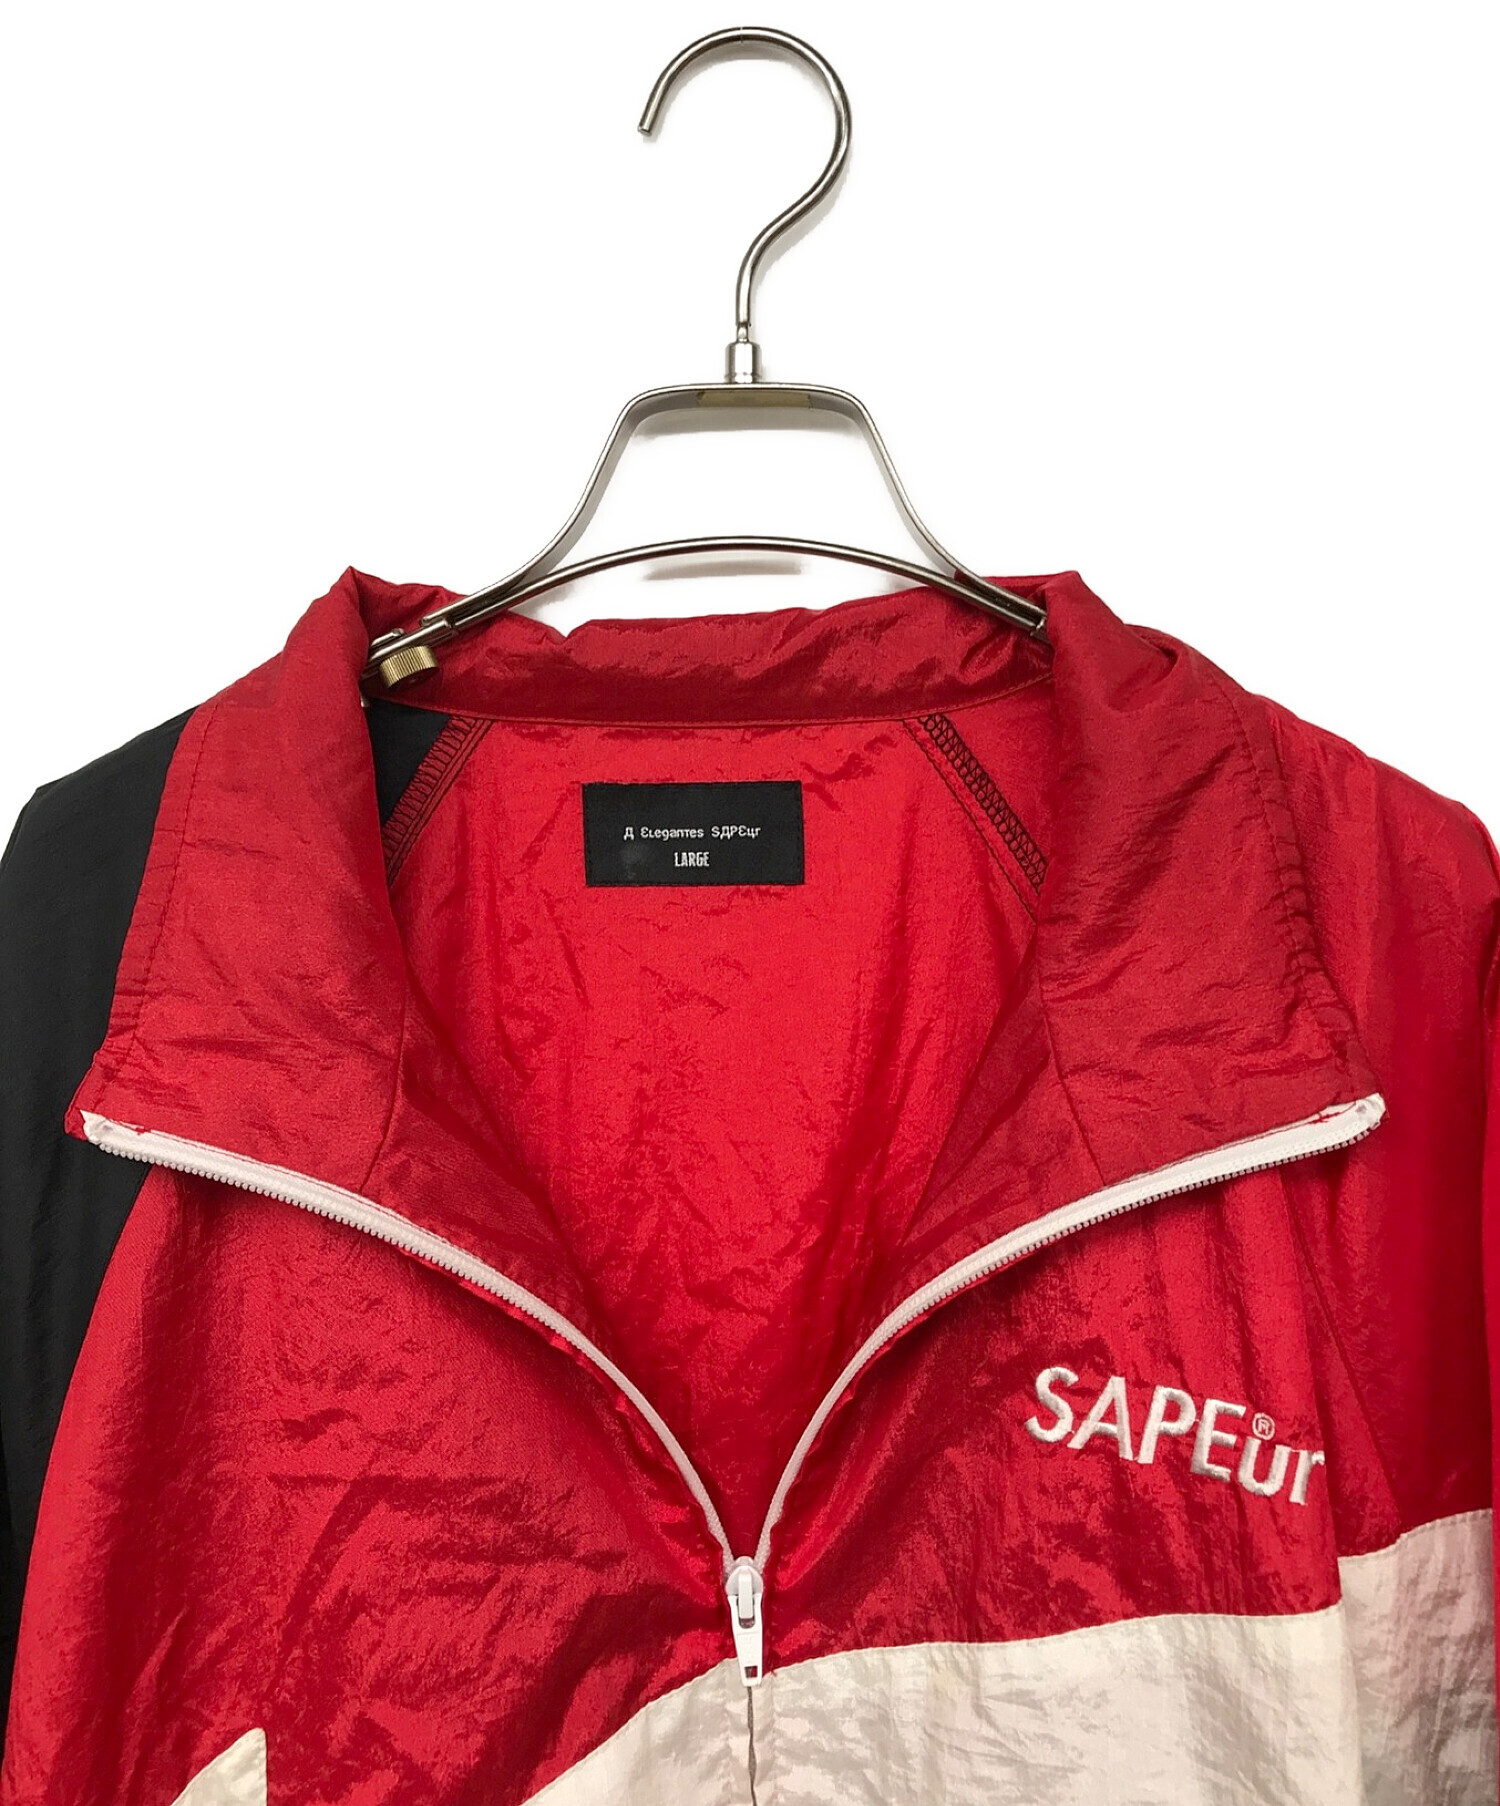 SAPEur (サプール) ナイロンジャケット レッド×ブラック サイズ:L